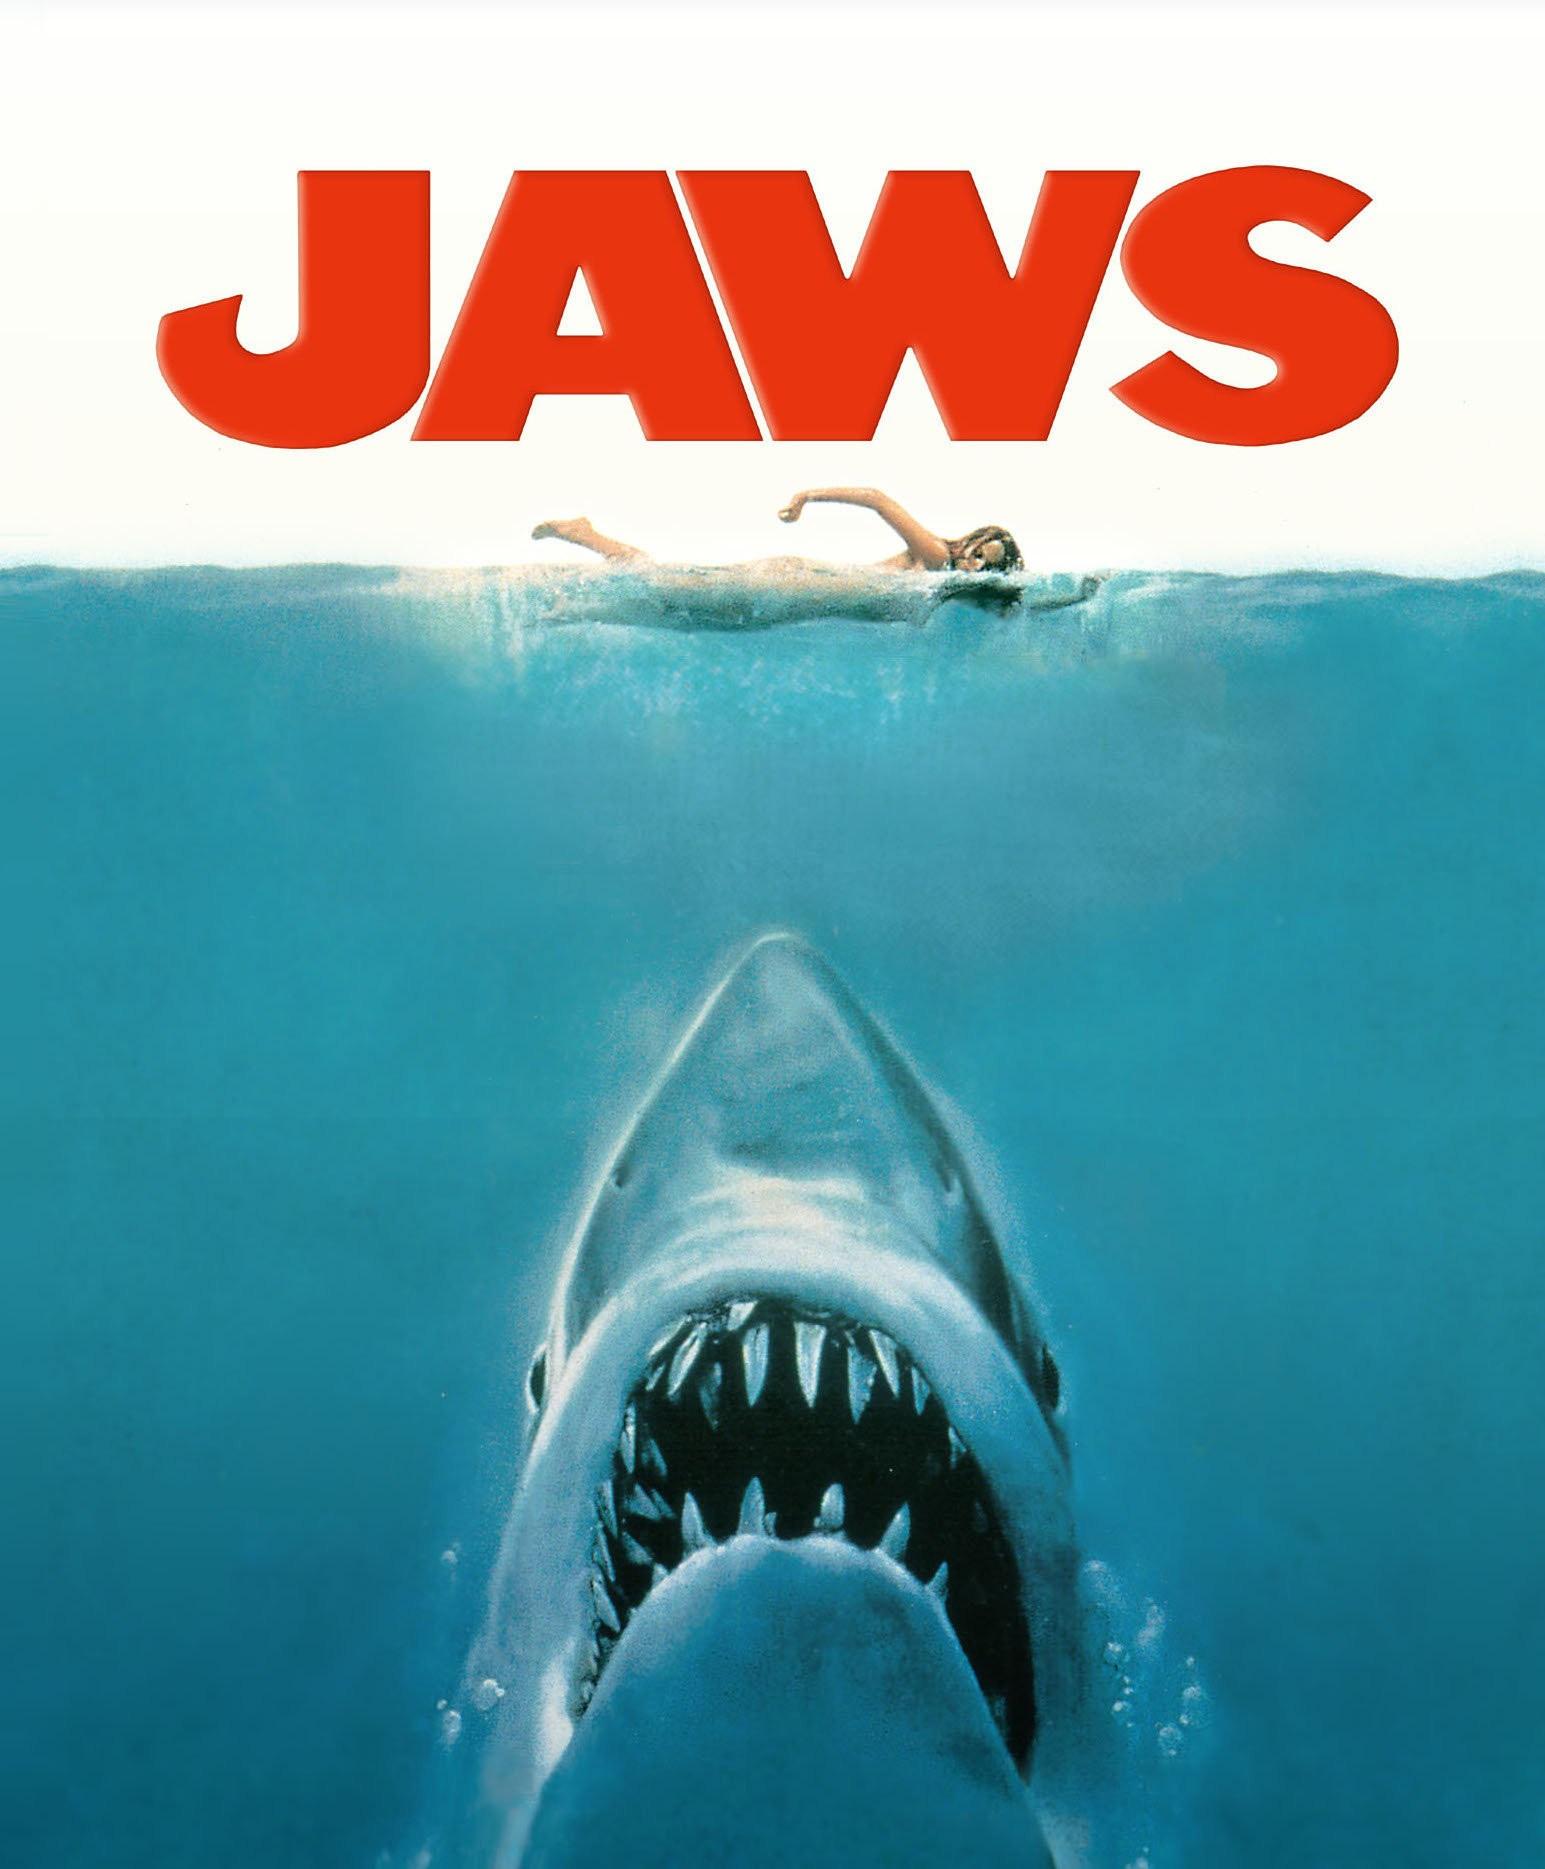 新《大白鲨》电影将推出,水底猛兽vs性感美女,这次玩出什么花样